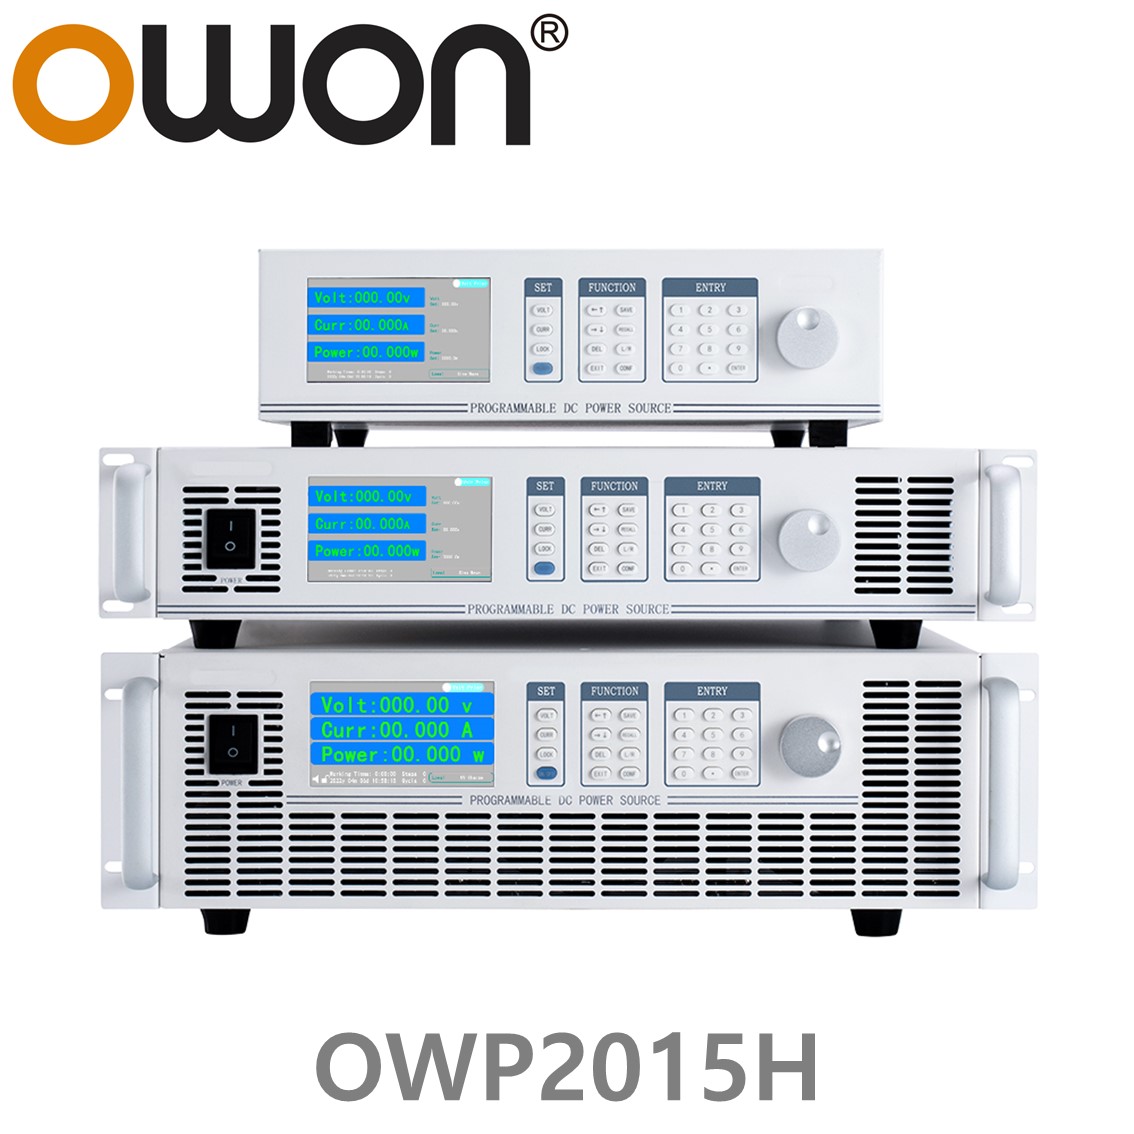 [ OWON ] OWP2015H 고전력 DC파워서플라이, 0-150.00V / 0-30.000A / 2000.0W DC전원공급장치